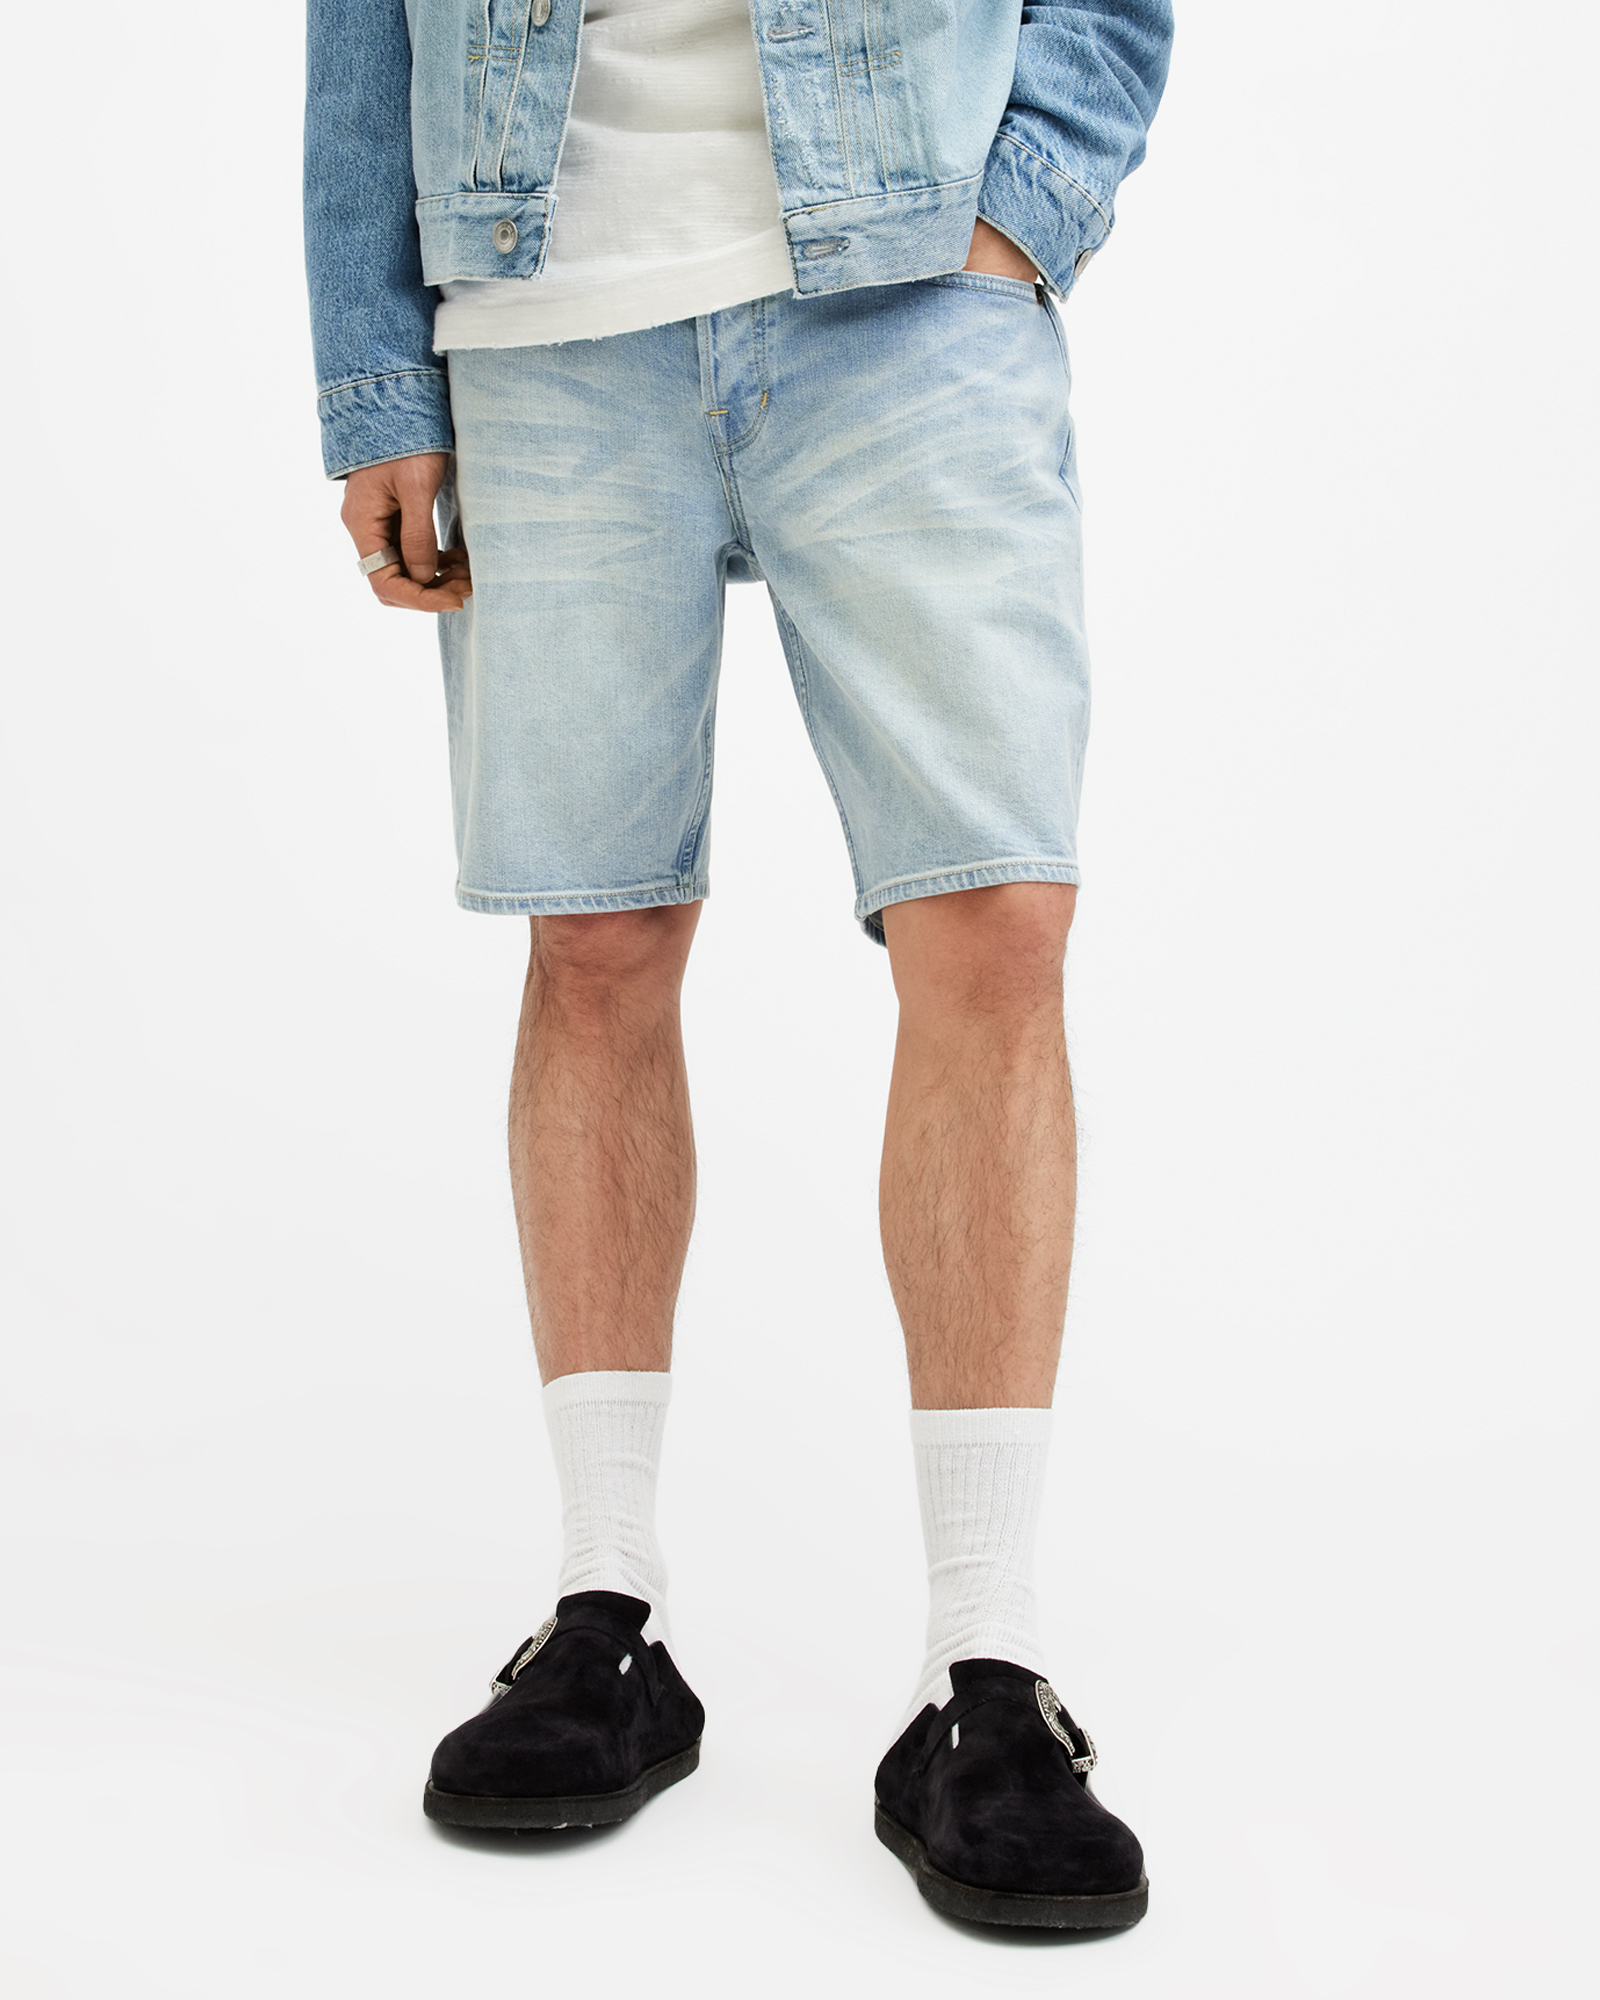 AllSaints Switch Skinny Fit Denim Shorts,, LIGHT INDIGO BLUE, Size: